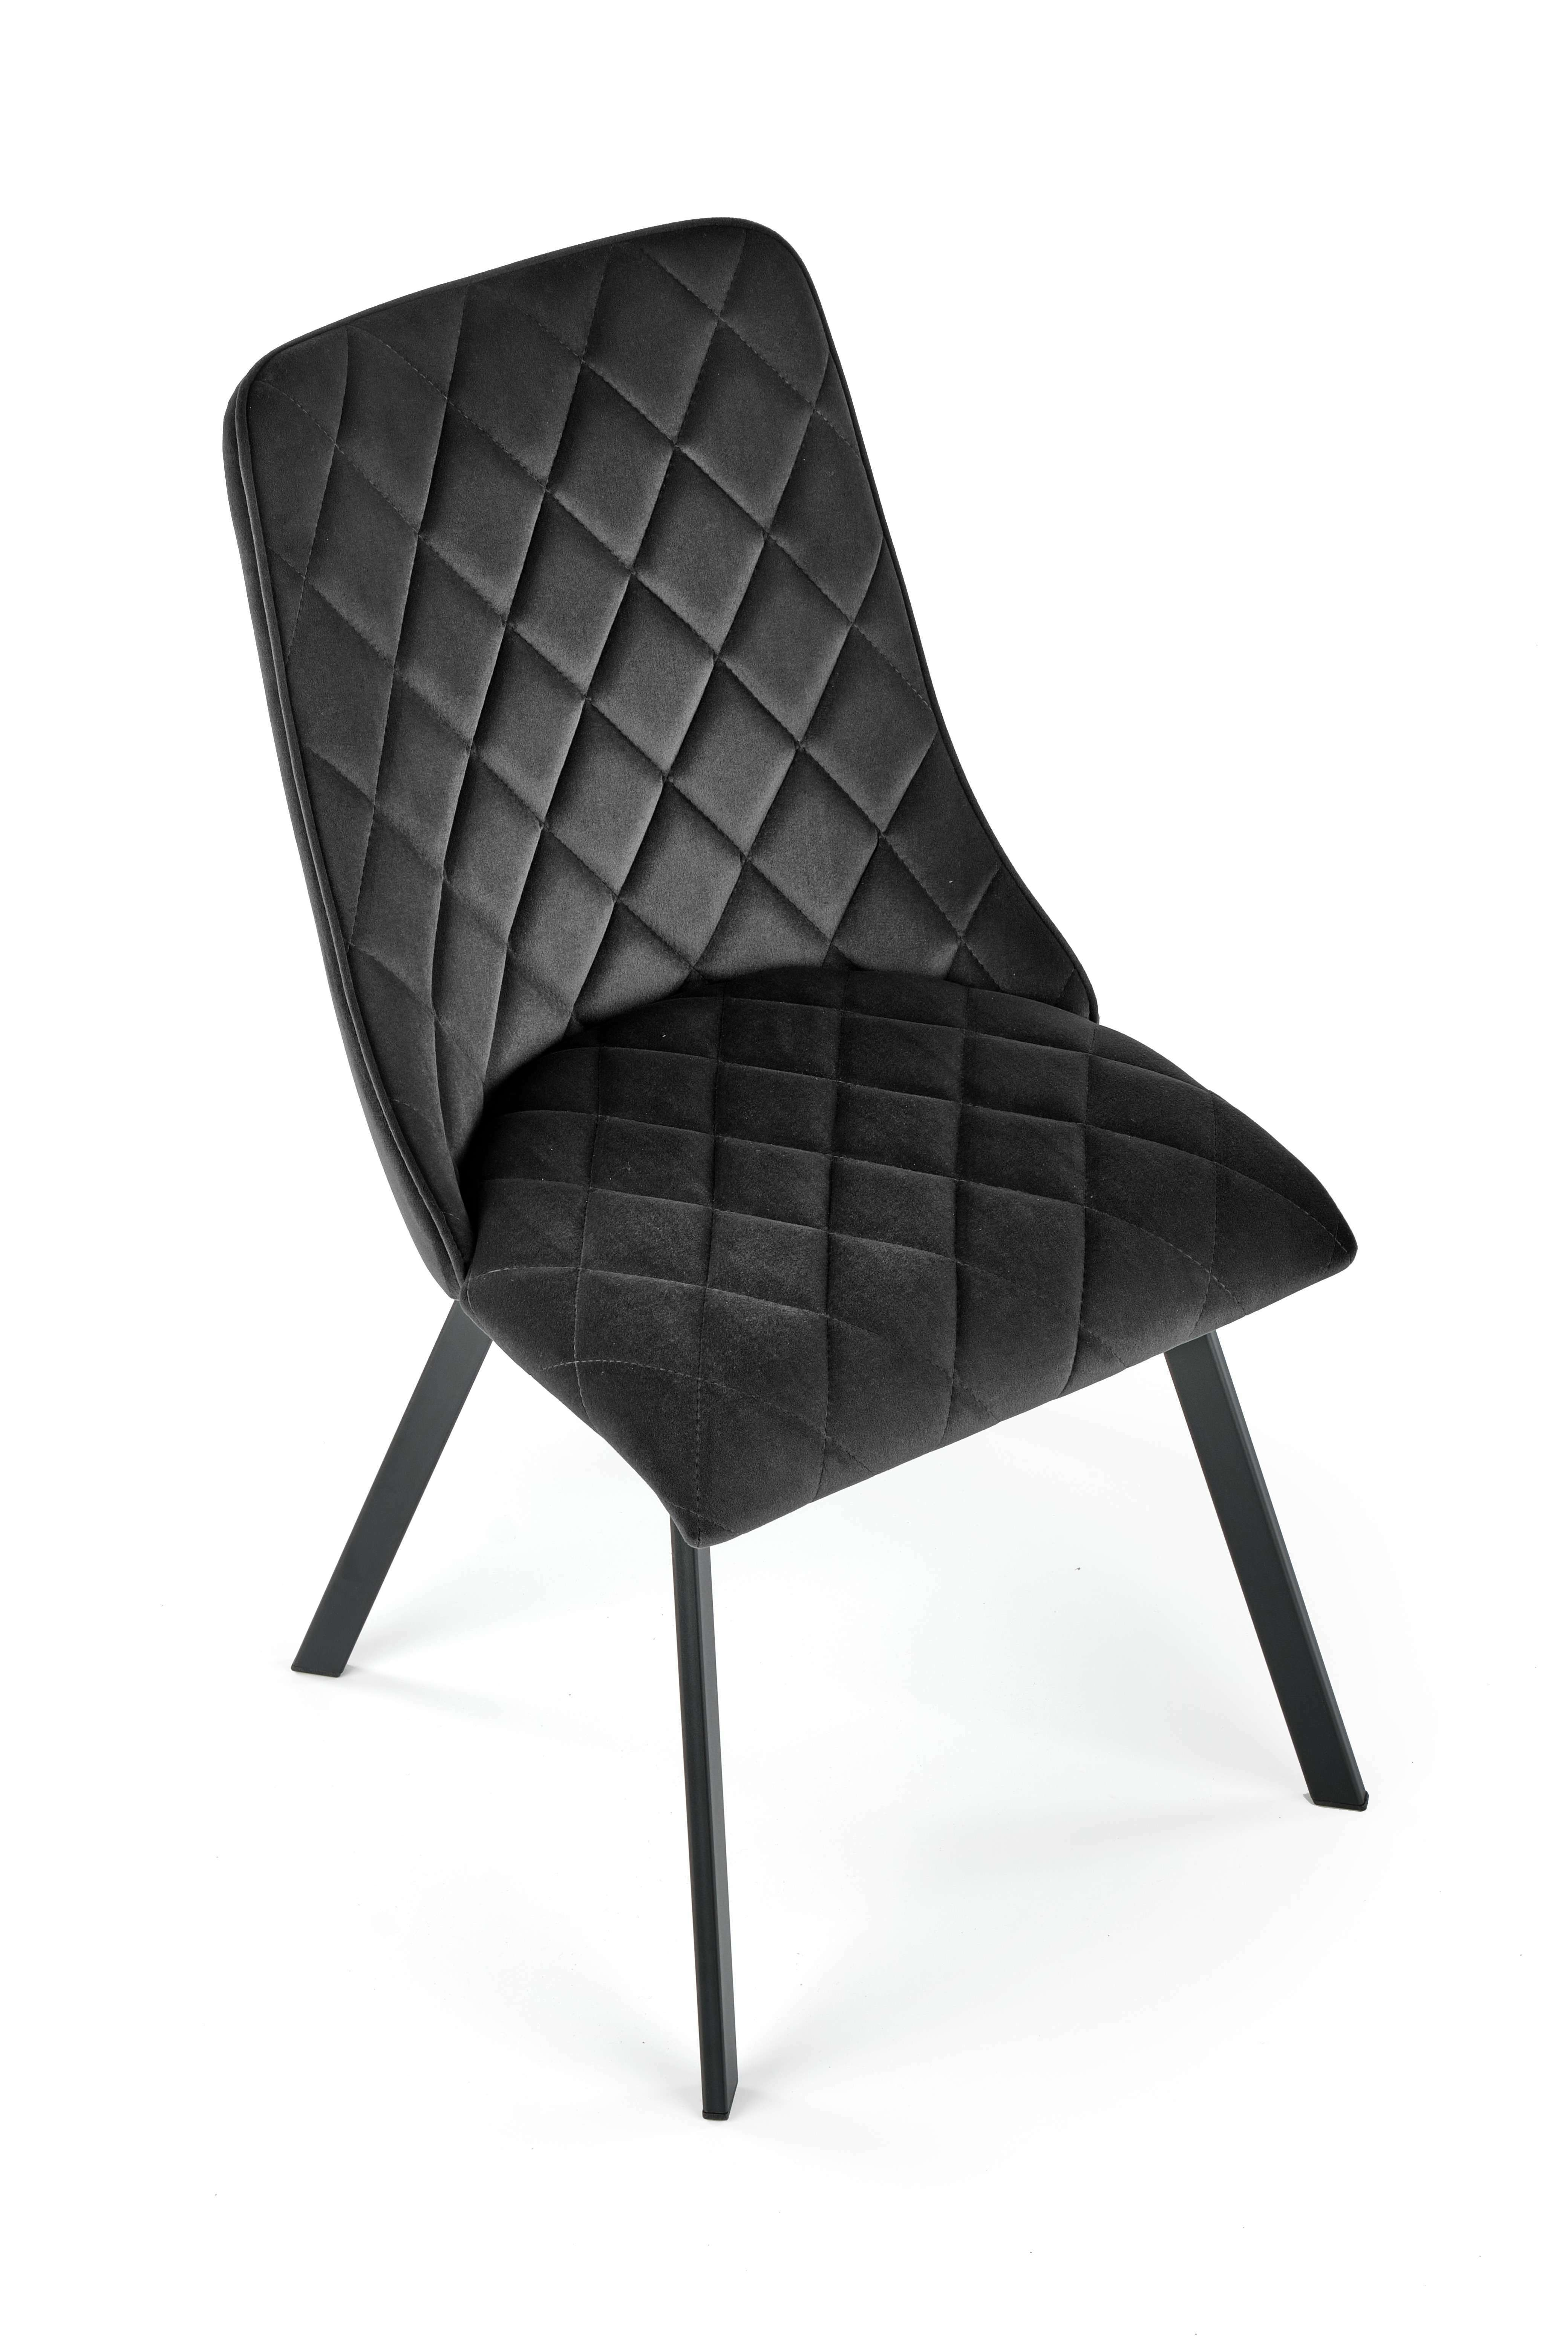 K450 krzesło czarny (1p=4szt)